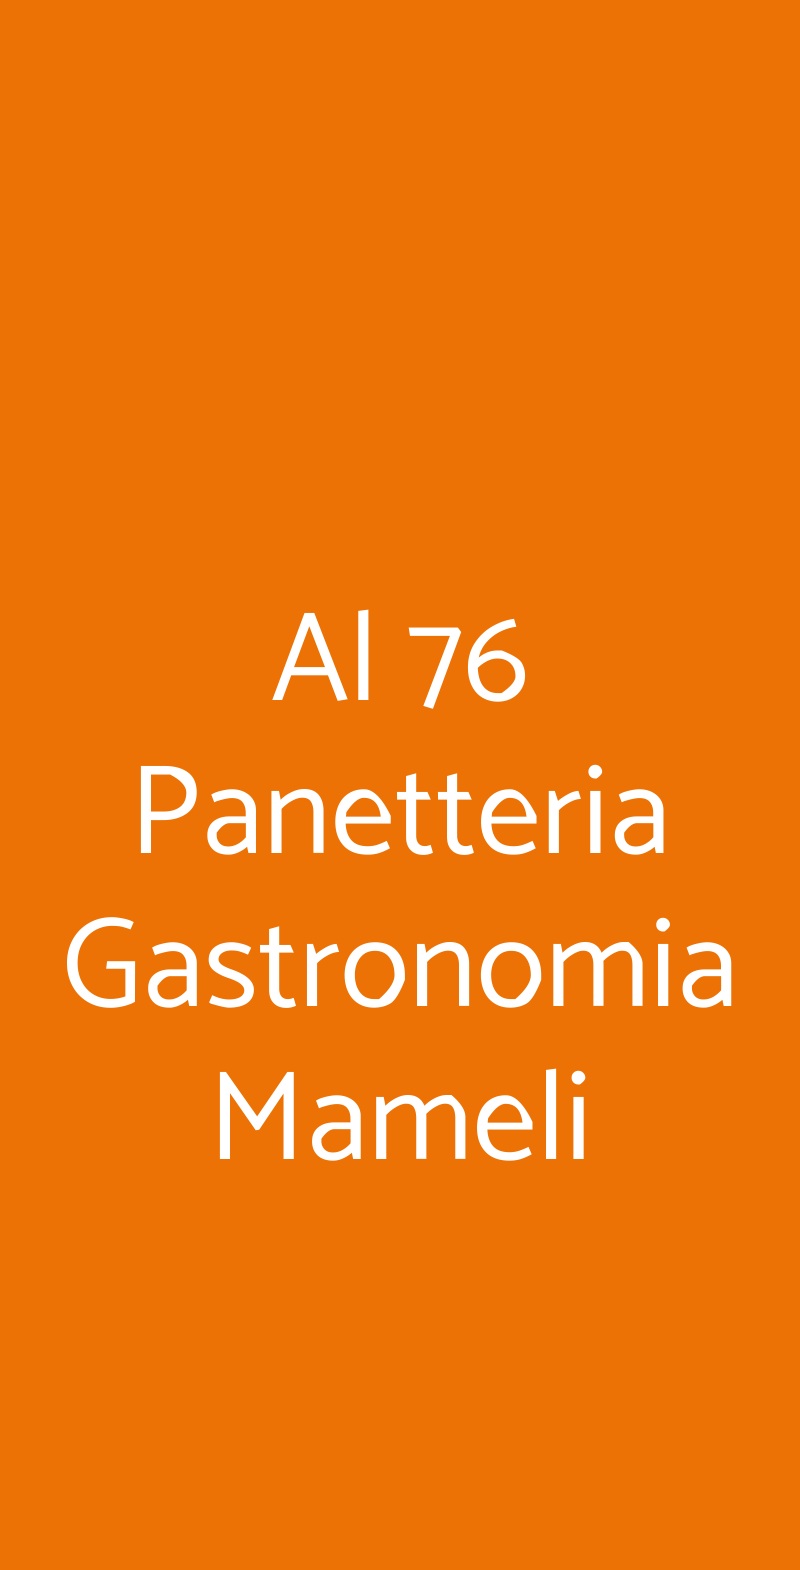 Al 76 Panetteria Gastronomia Mameli Verona menù 1 pagina